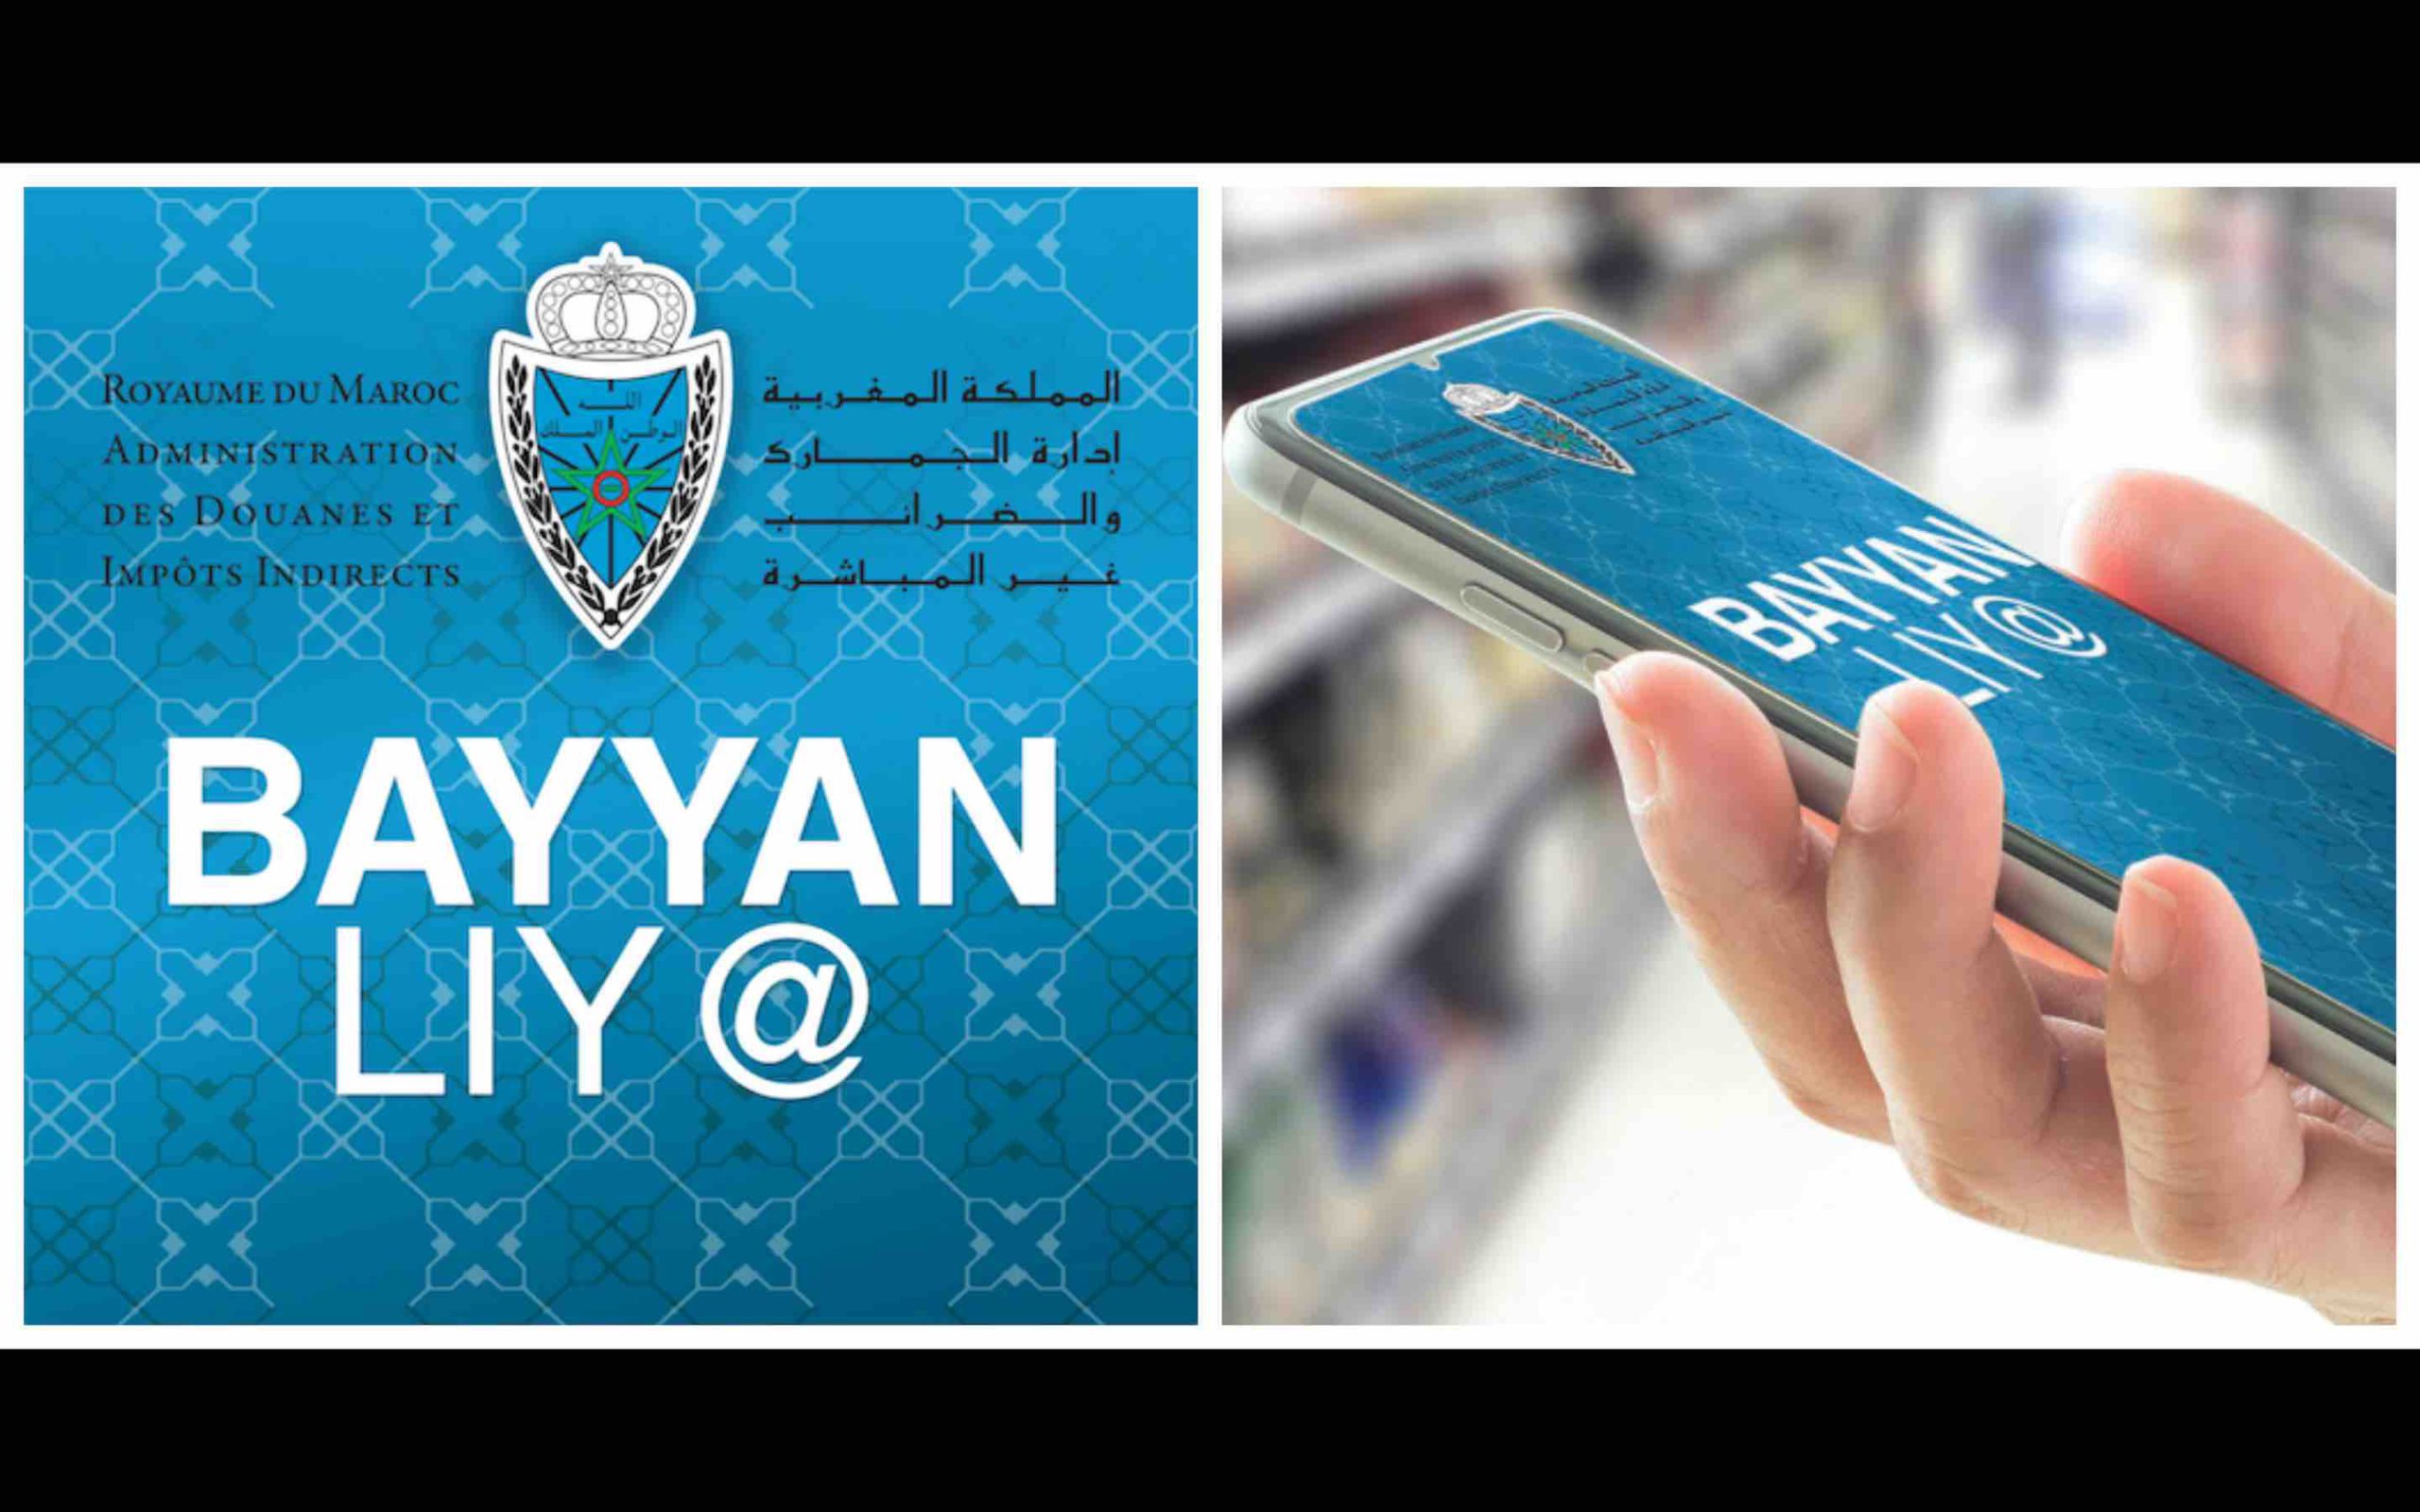  L’ADII : « BAYYAN LIY@ » pour les consommateurs marocains 